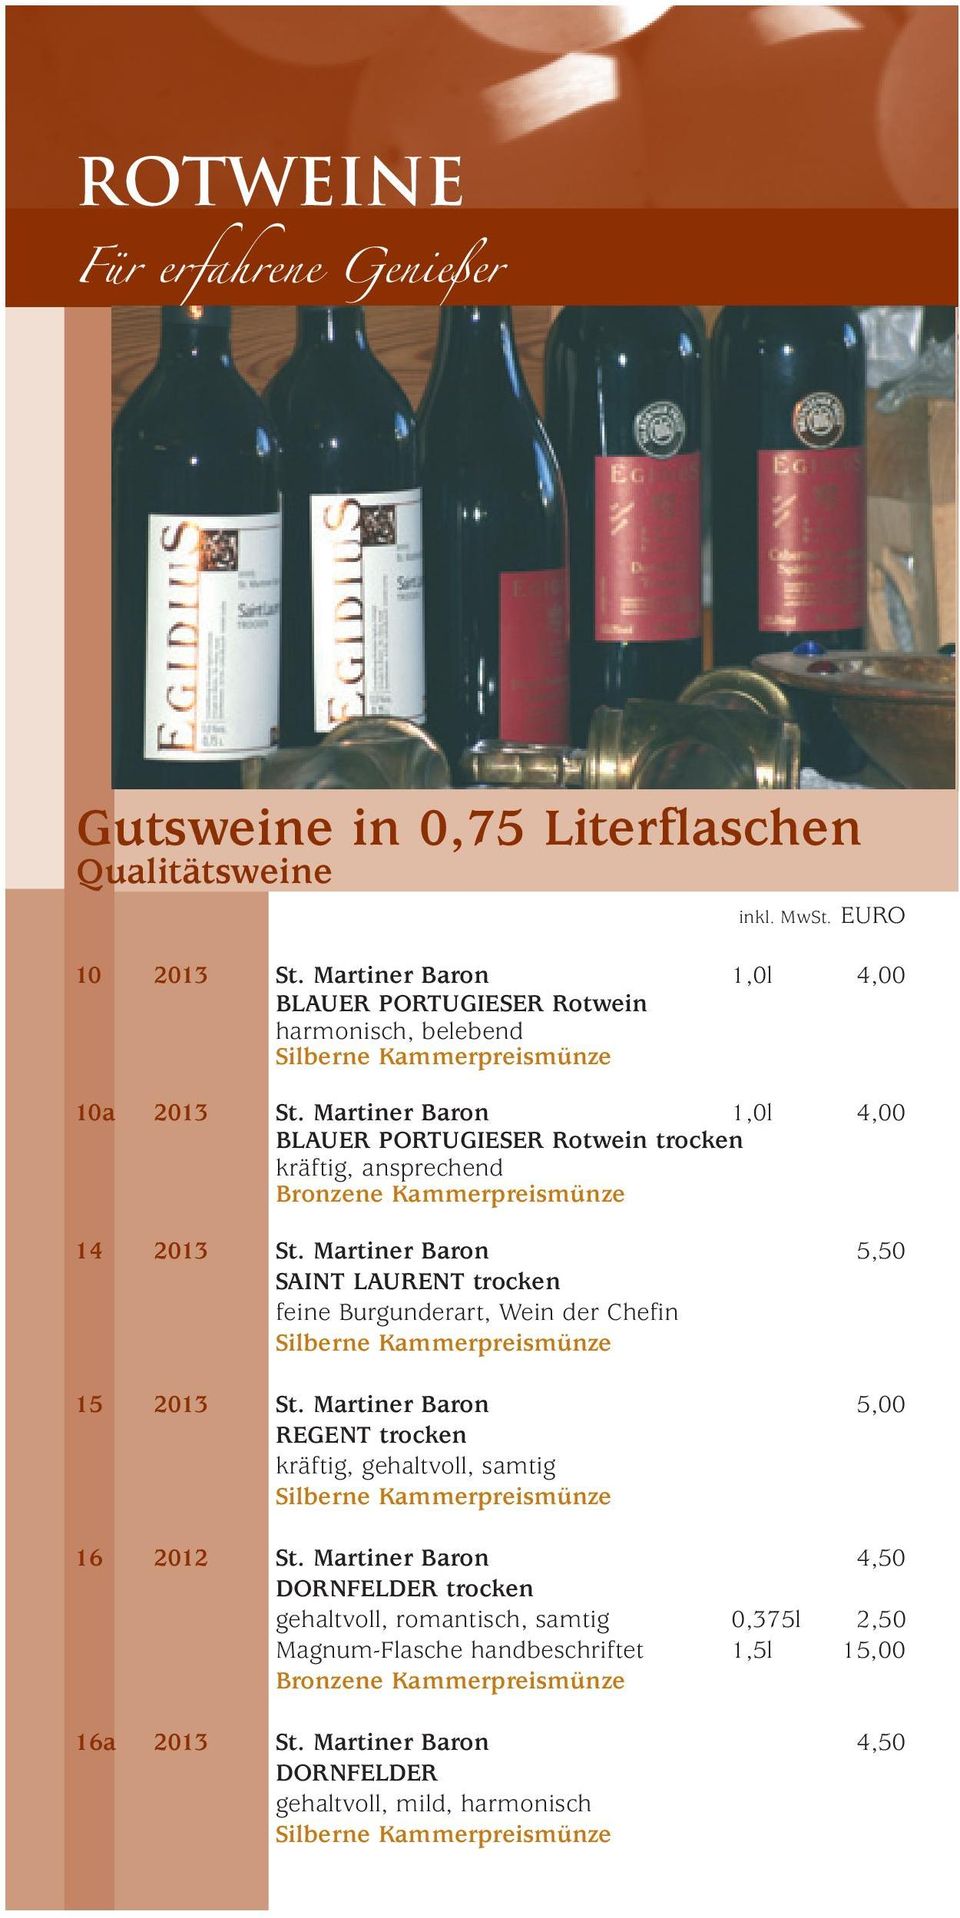 Martiner Baron 1,0l 4,00 BLAUER PORTUGIESER Rotwein trocken kräftig, ansprechend 14 2013 St.